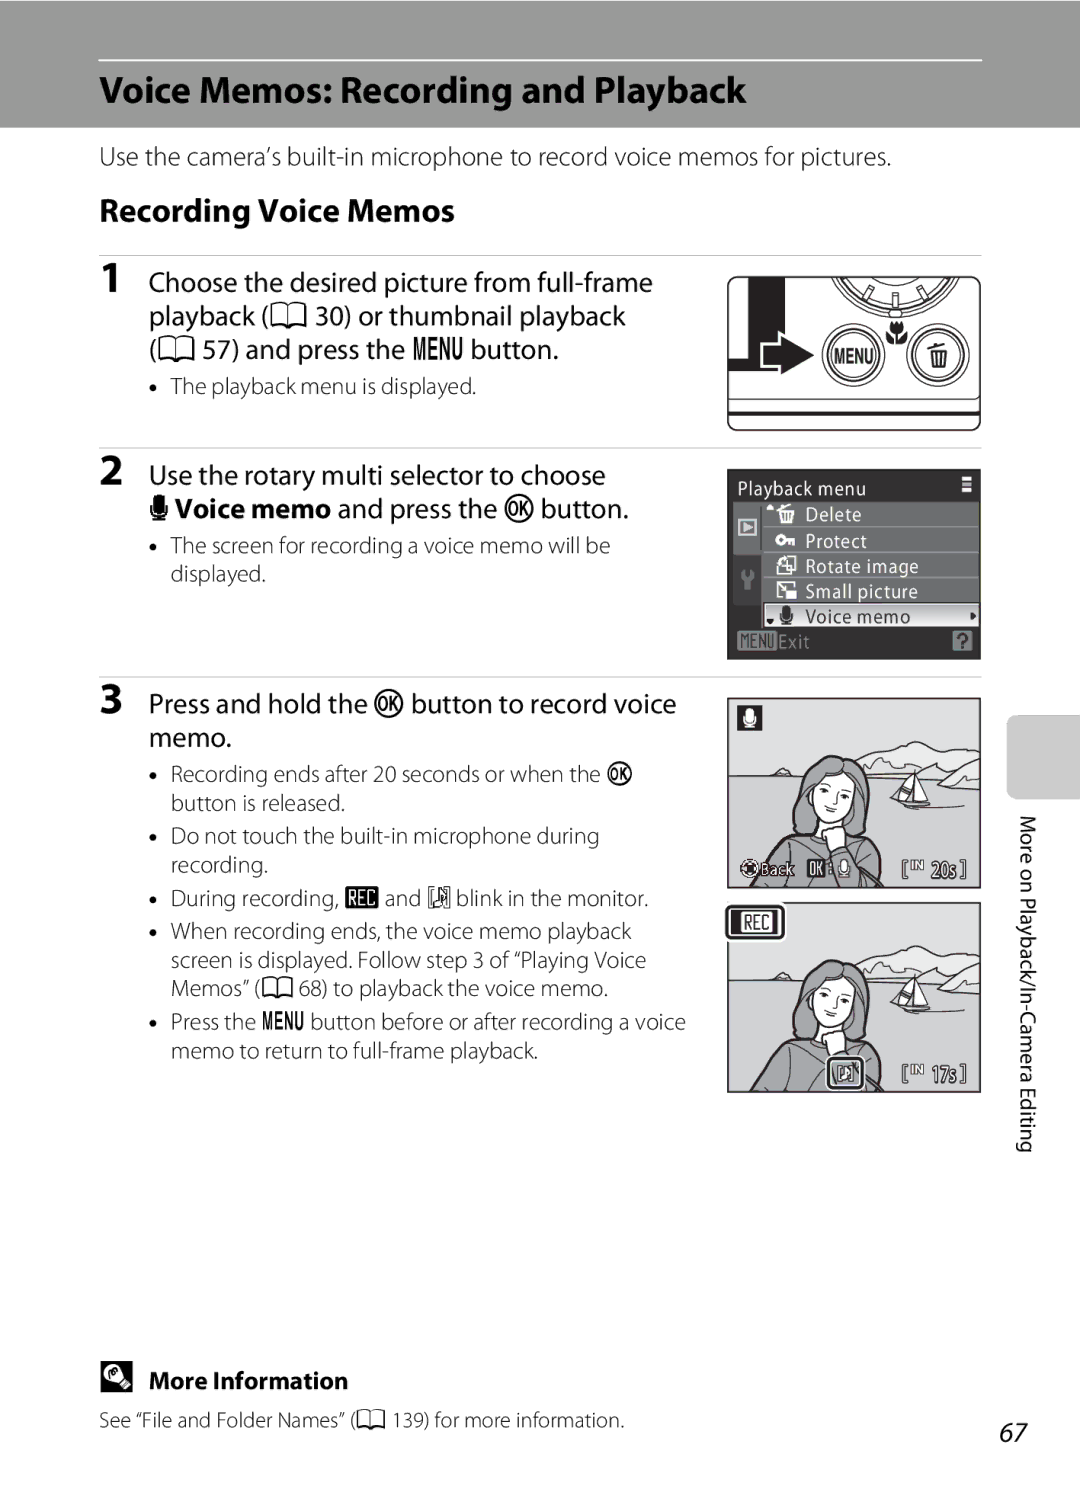 Nortel Networks S640 user manual Voice Memos Recording and Playback, Recording Voice Memos, Playback menu is displayed 